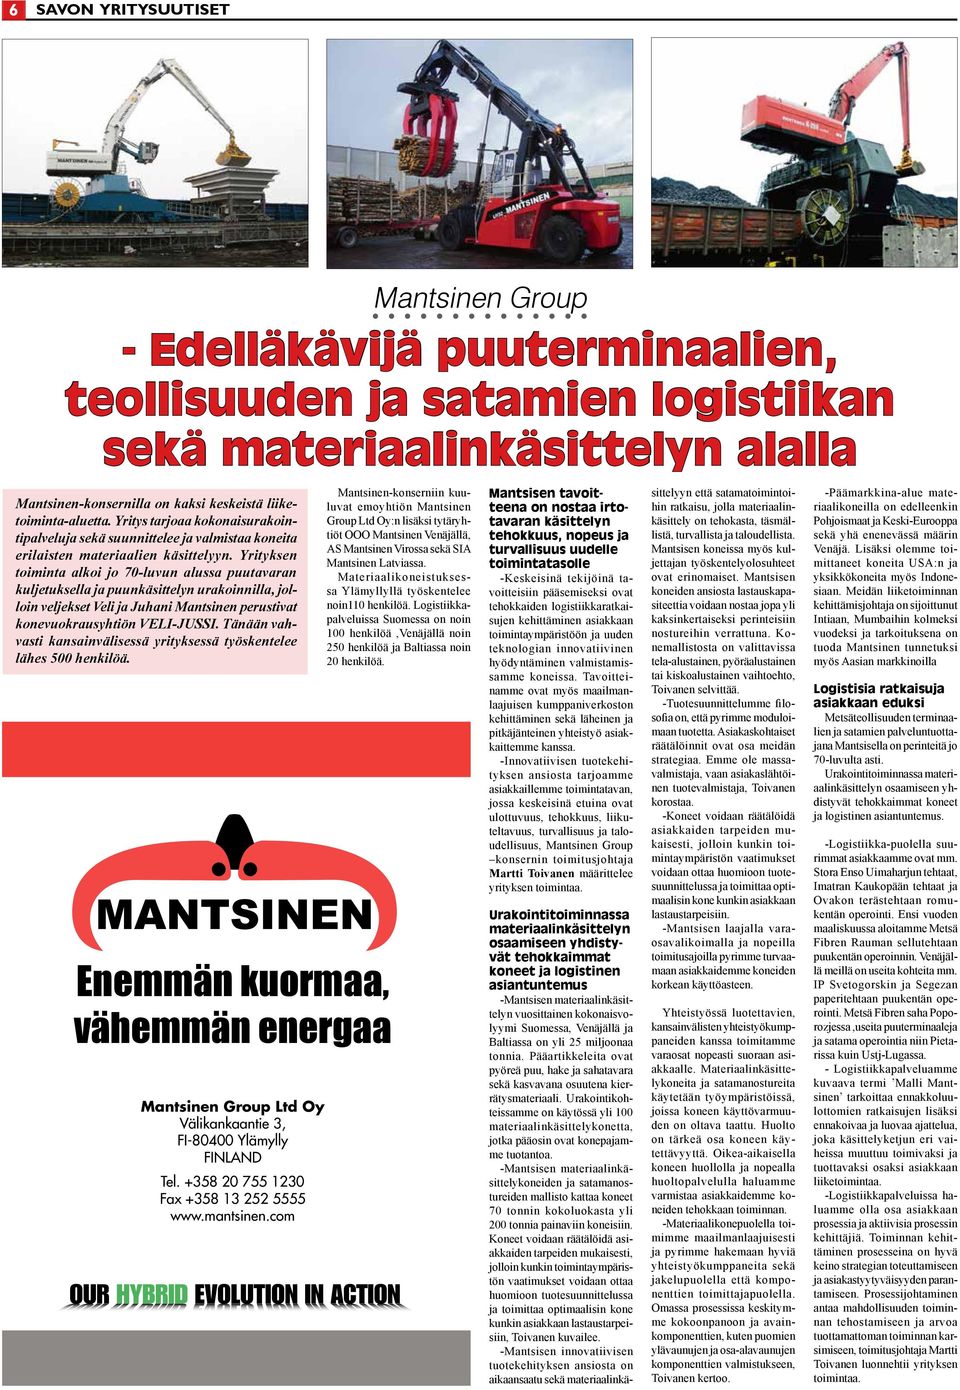 Yrityksen toiminta alkoi jo 70-luvun alussa puutavaran kuljetuksella ja puunkäsittelyn urakoinnilla, jolloin veljekset Veli ja Juhani Mantsinen perustivat konevuokrausyhtiön VELI-JUSSI.